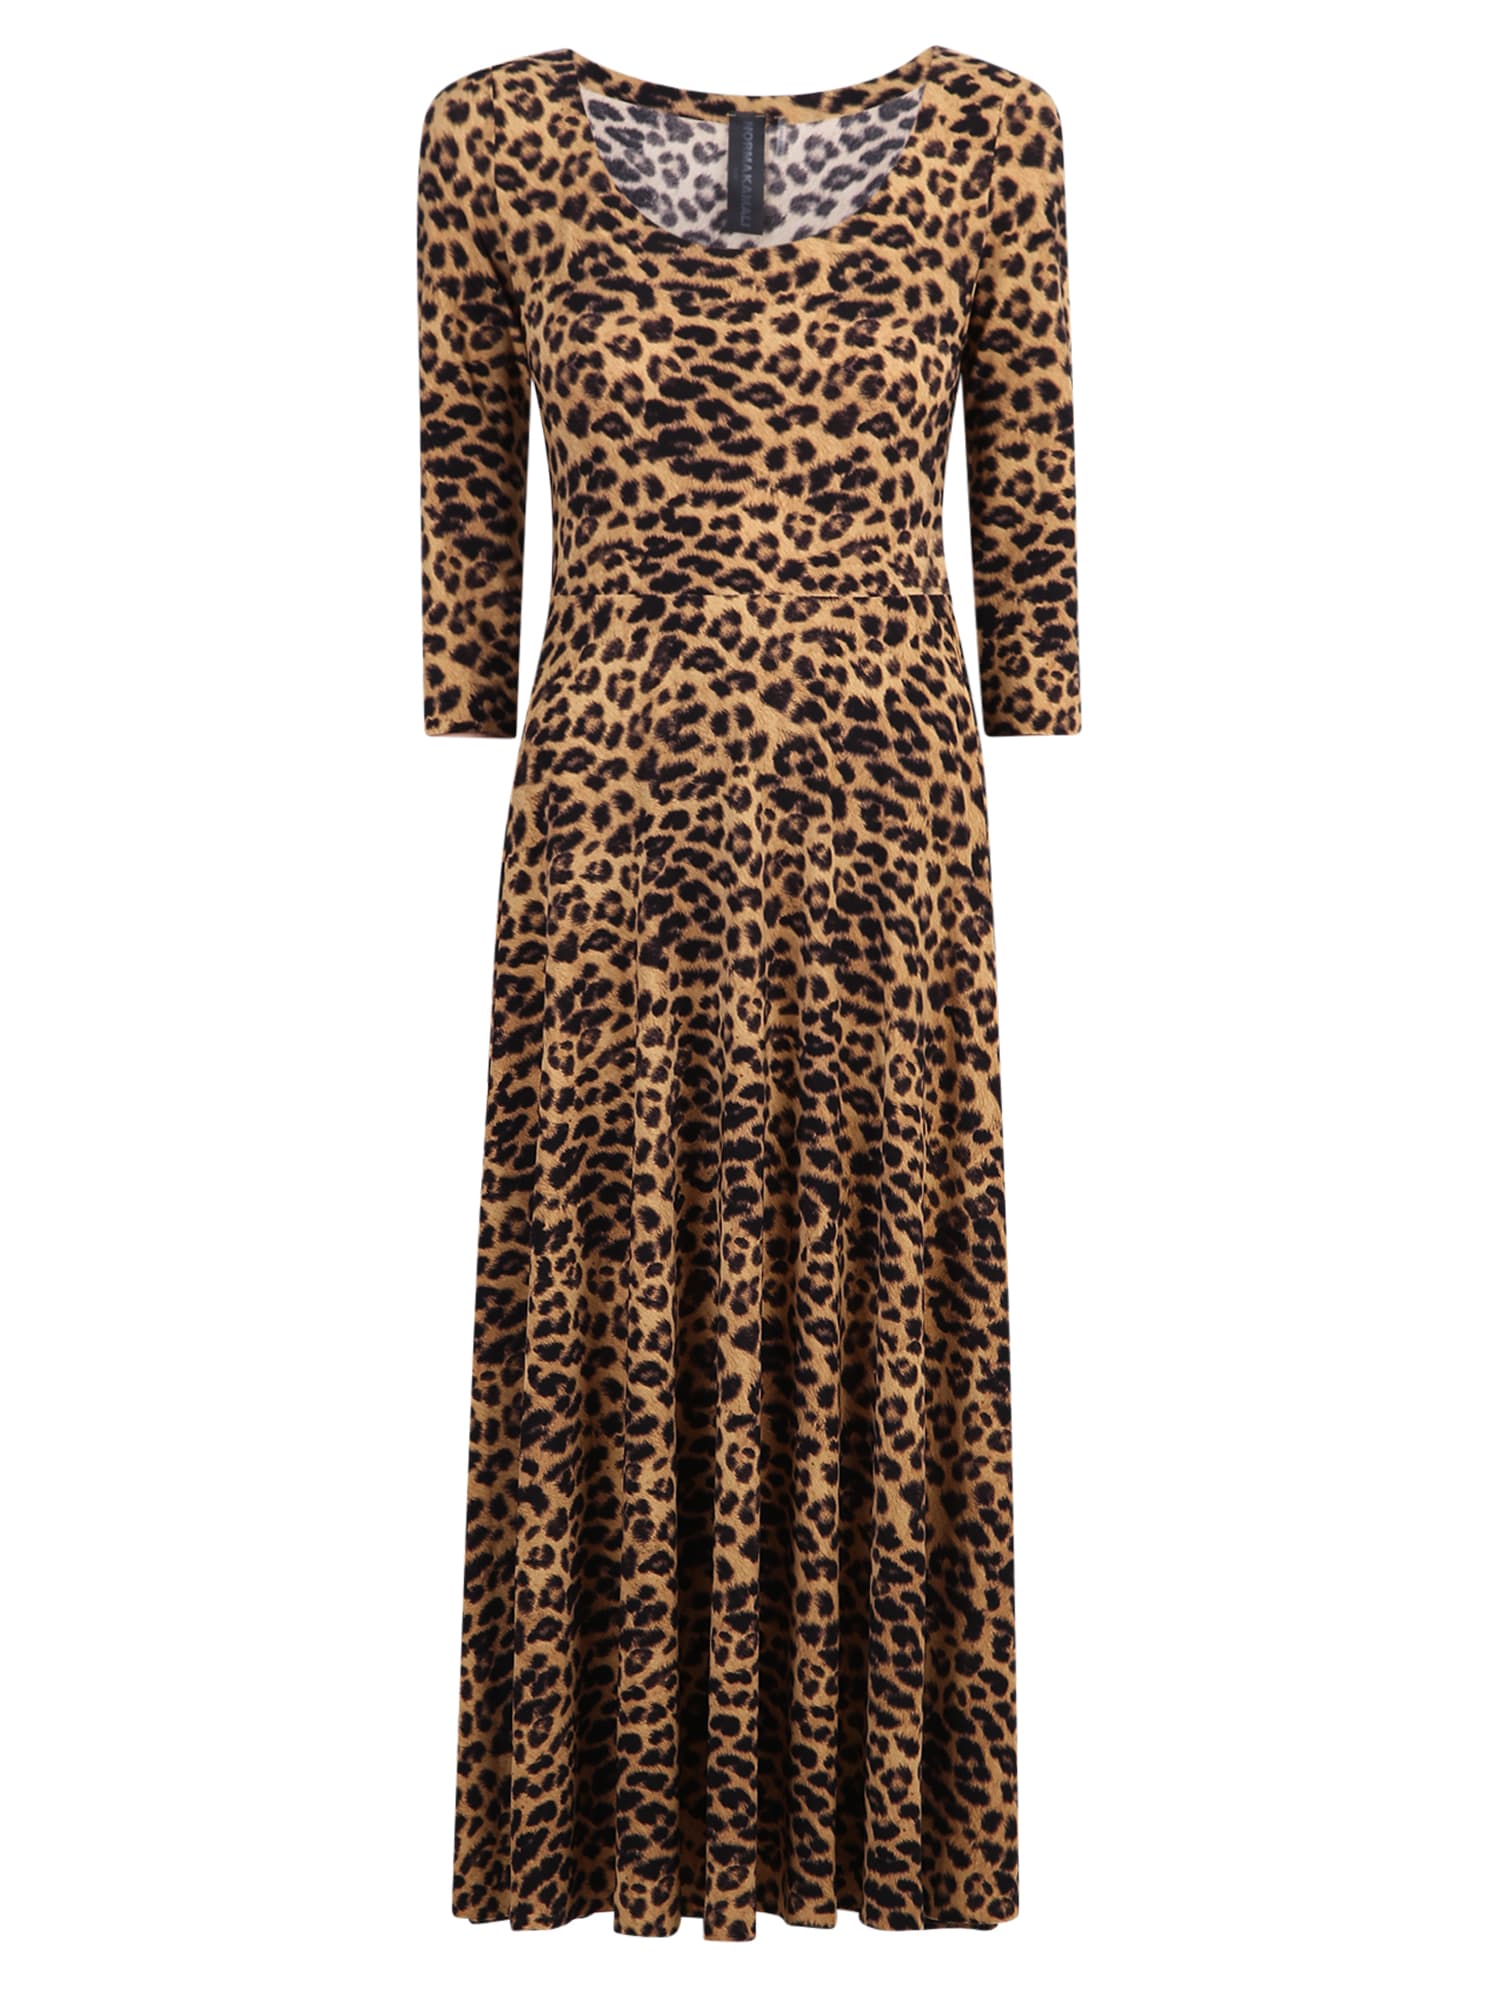 Norma Kamali Leopard Print Dress